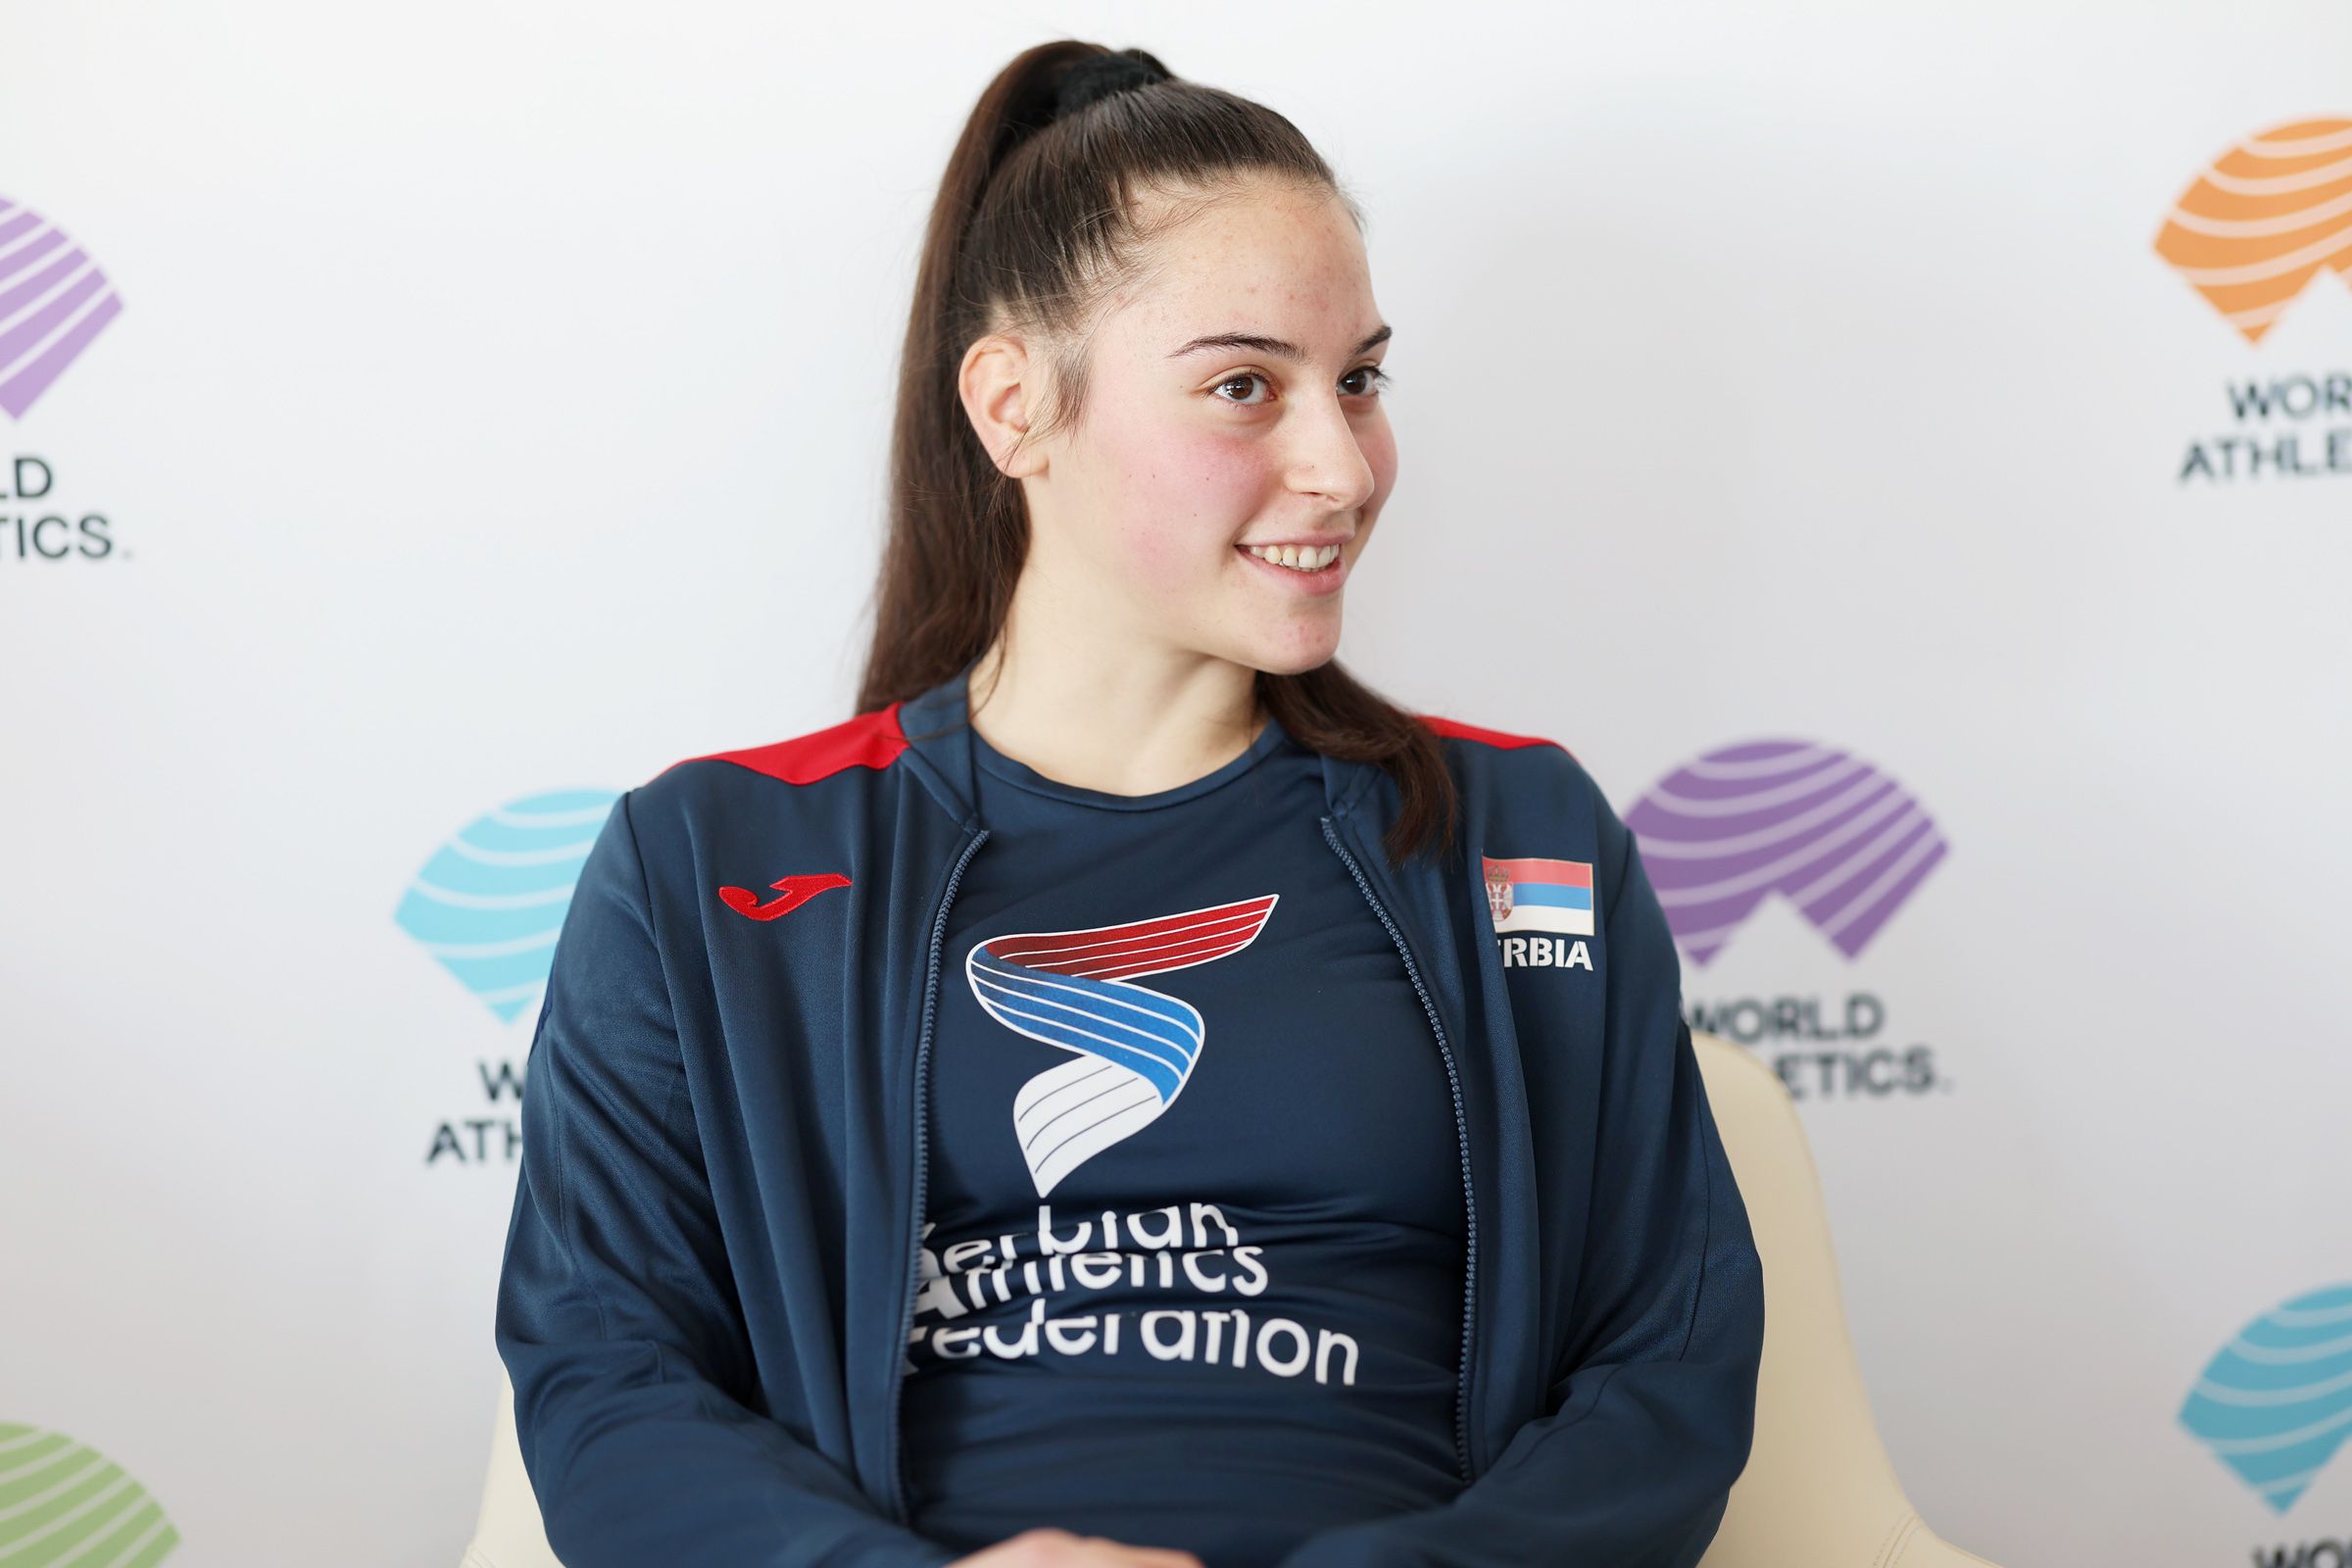 Serbian javelin thrower Adriana Vilagos